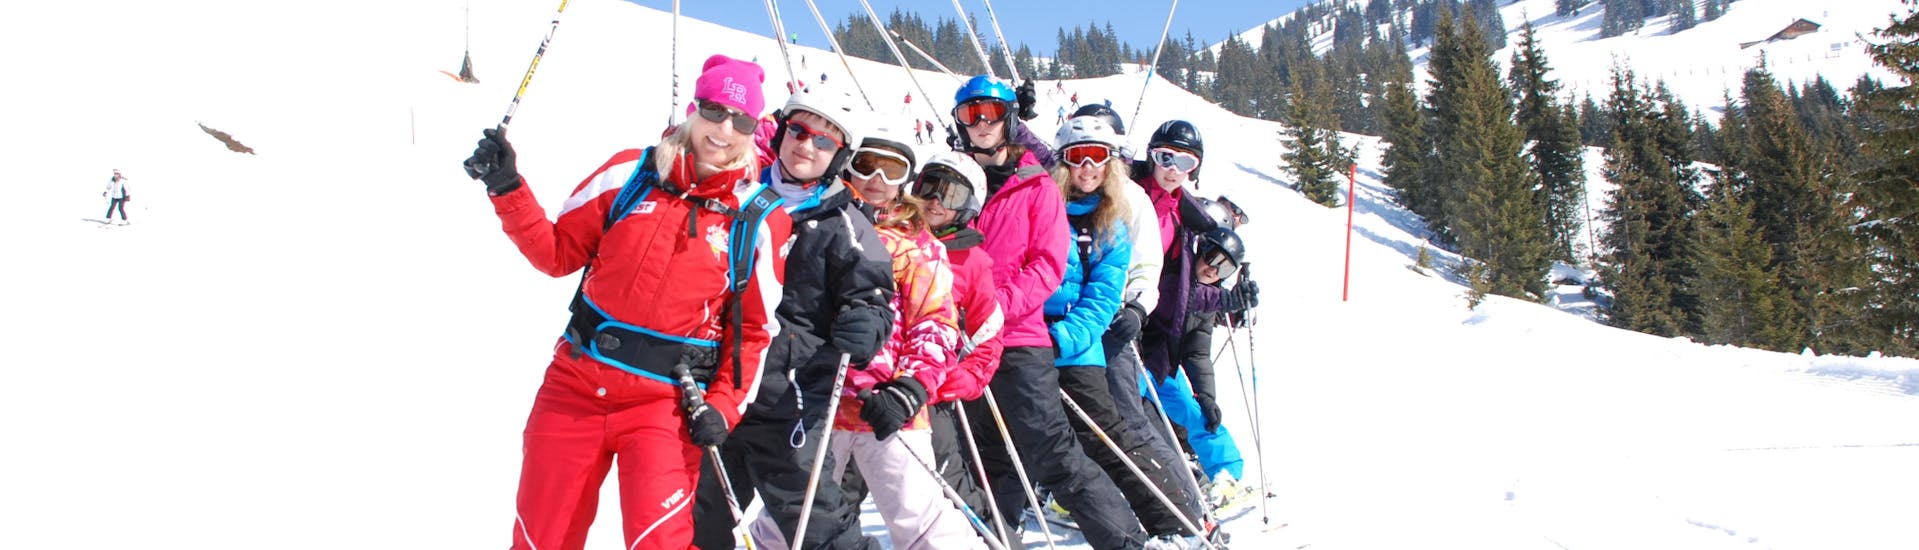 Clases de esquí para adultos a partir de 14 años con experiencia.